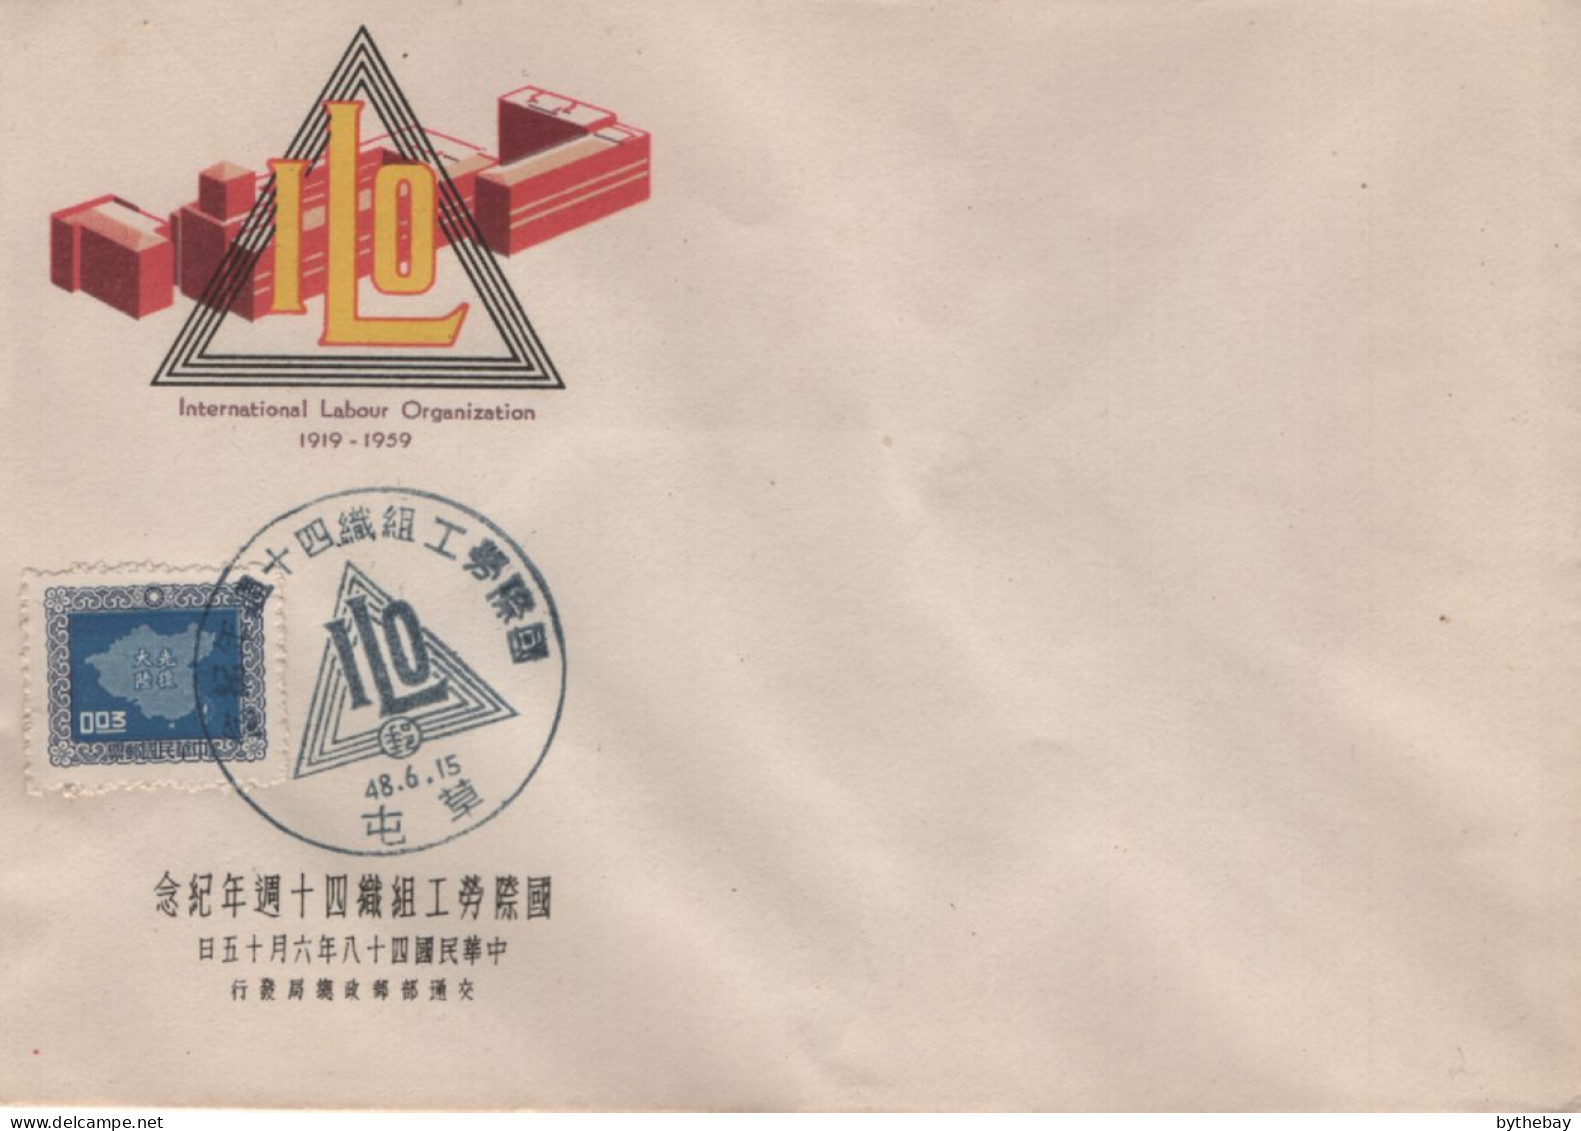 China Republic Of 1960 Cover Sc #1177 3c Map With ILO Commemorative Cancel - Briefe U. Dokumente